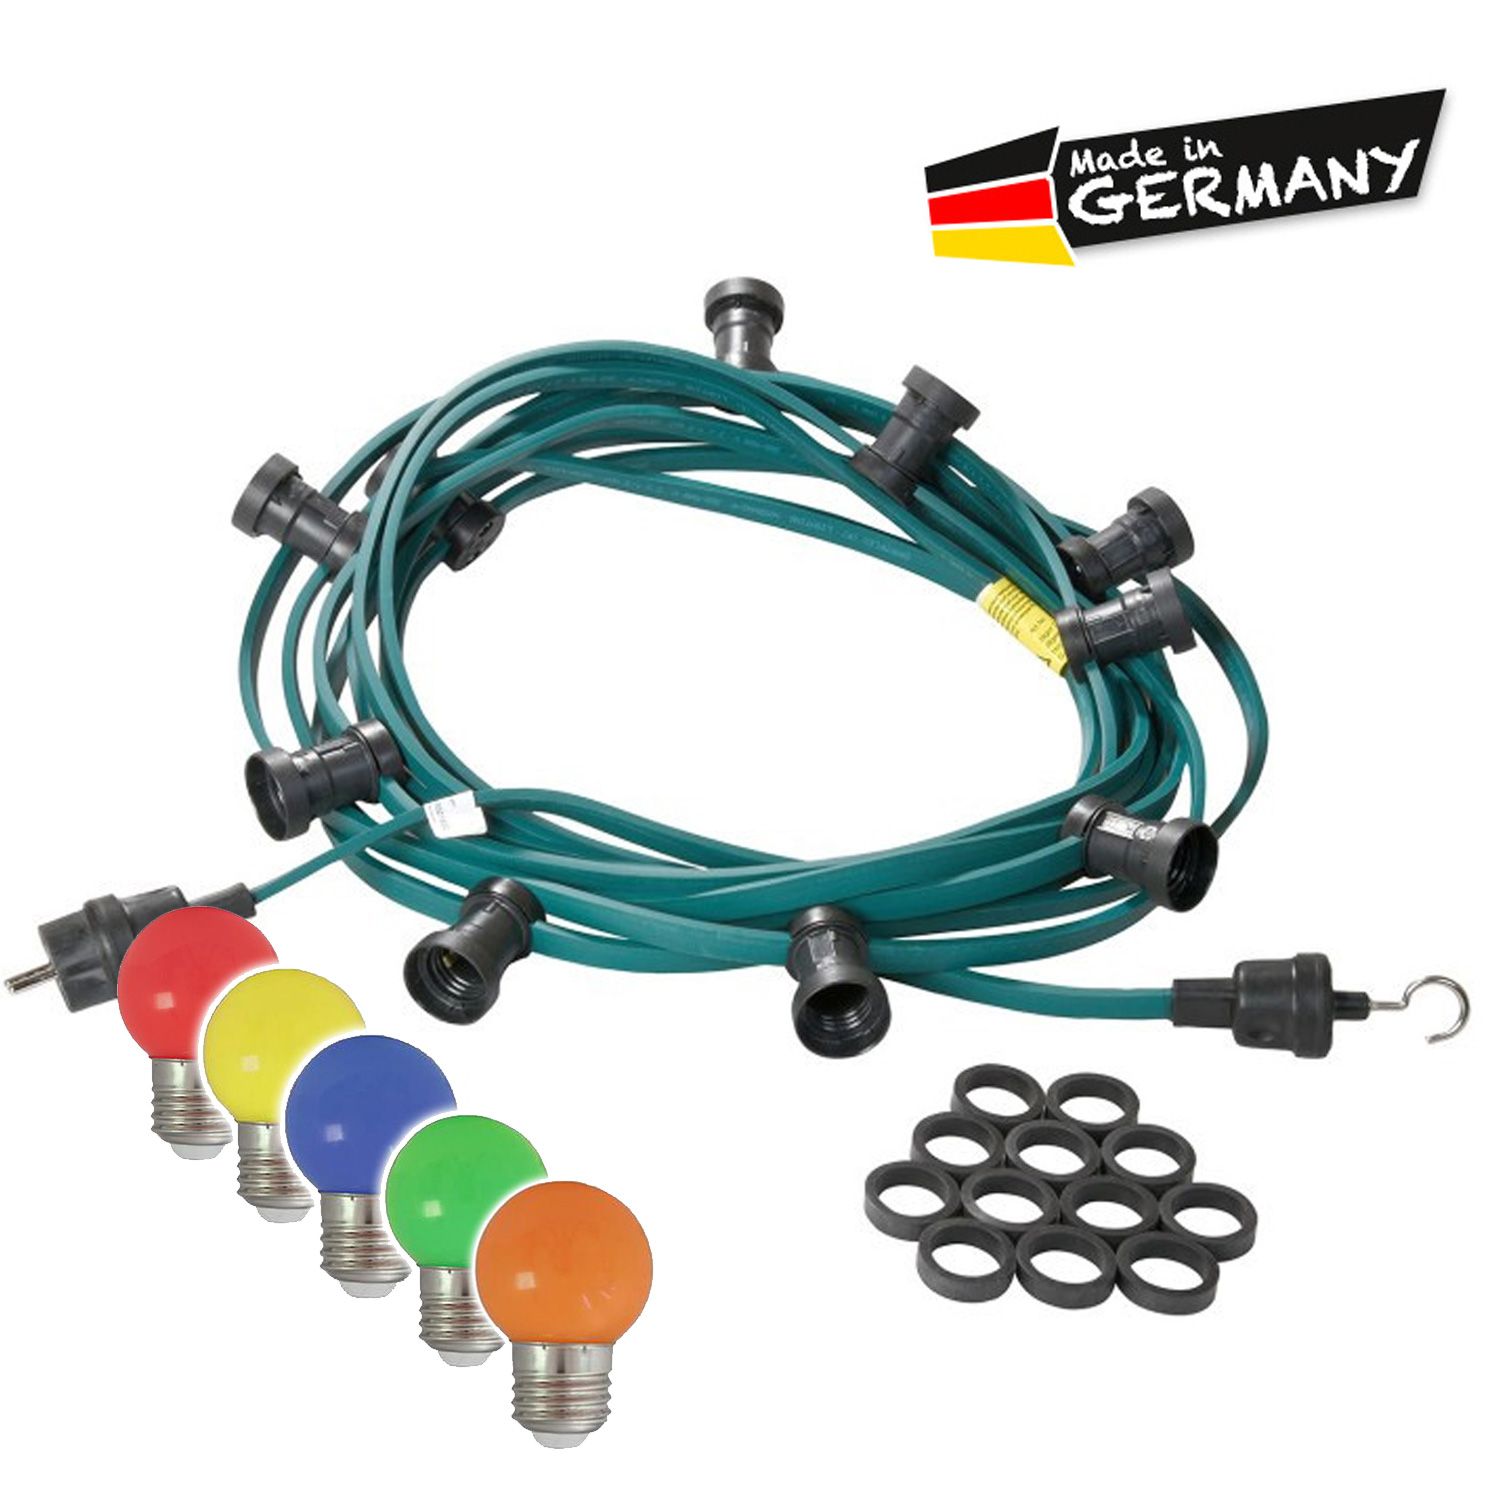 Illu-/Partylichterkette 20m - Außenlichterkette grün - Made in Germany - 40 x bunte LED Kugellampen